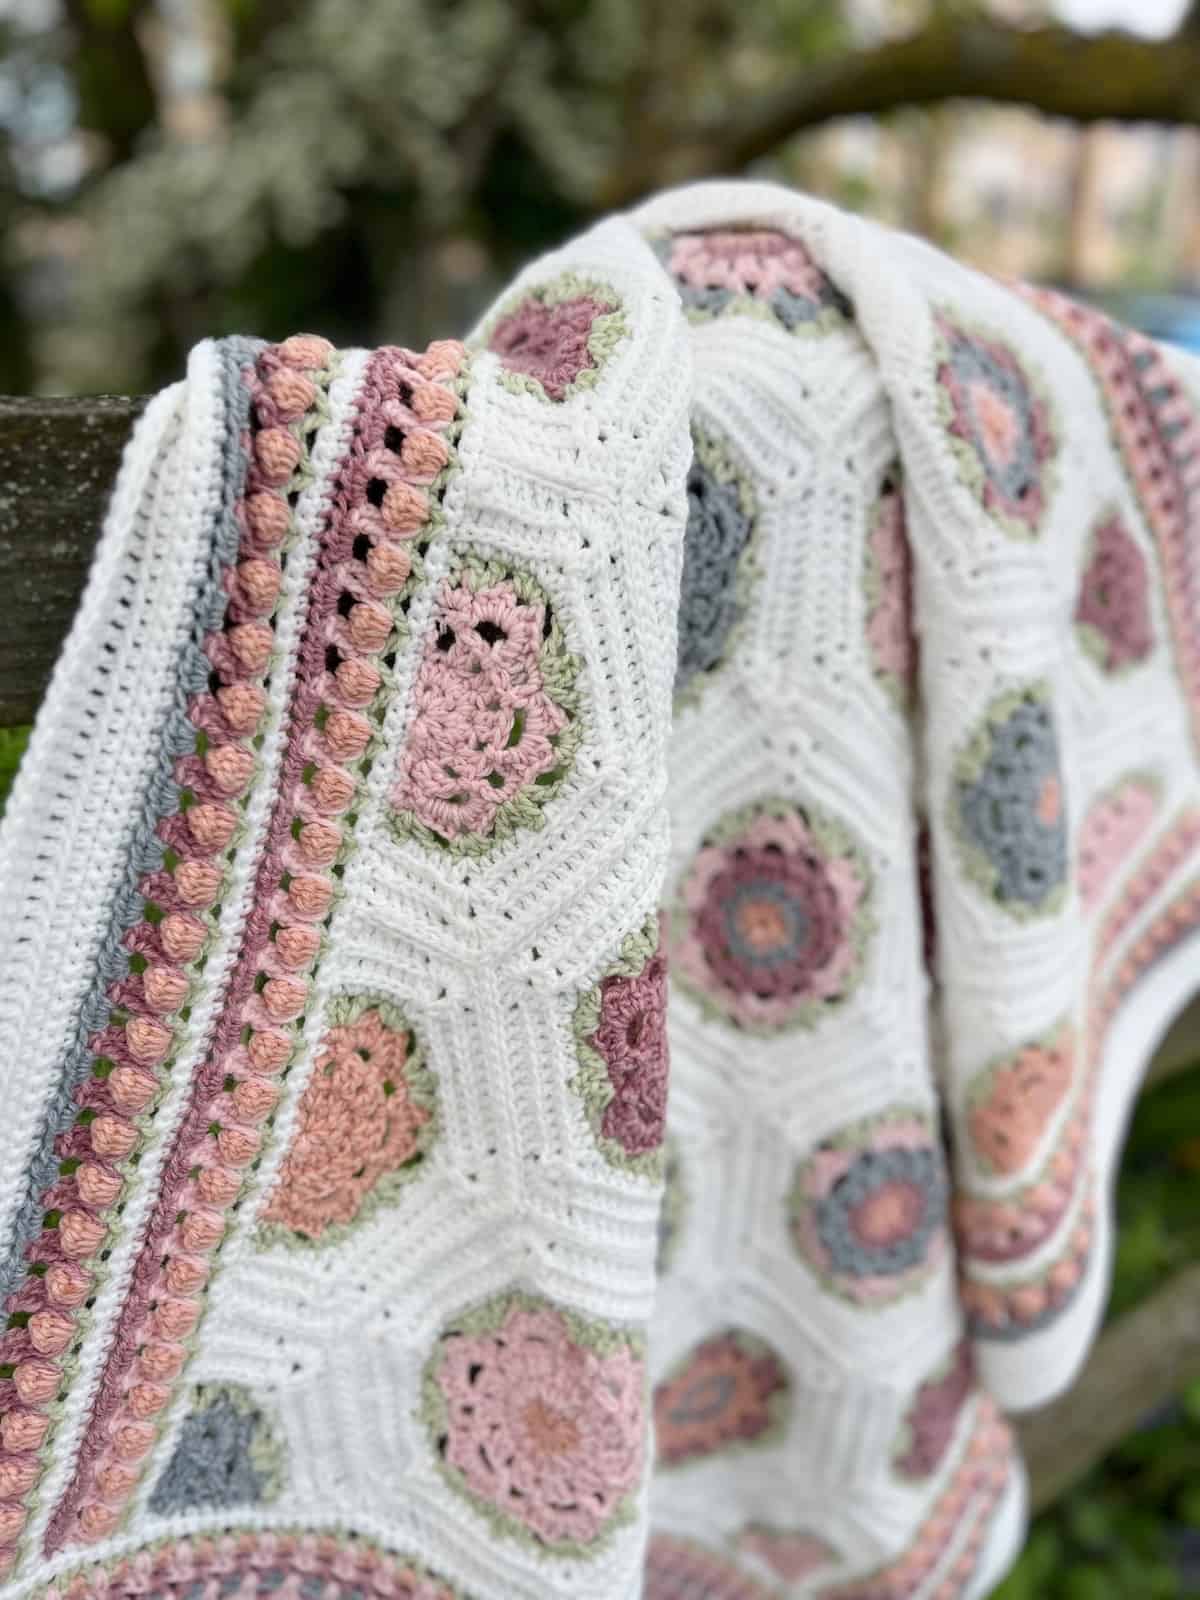 Flower crochet blanket laid over a gate.